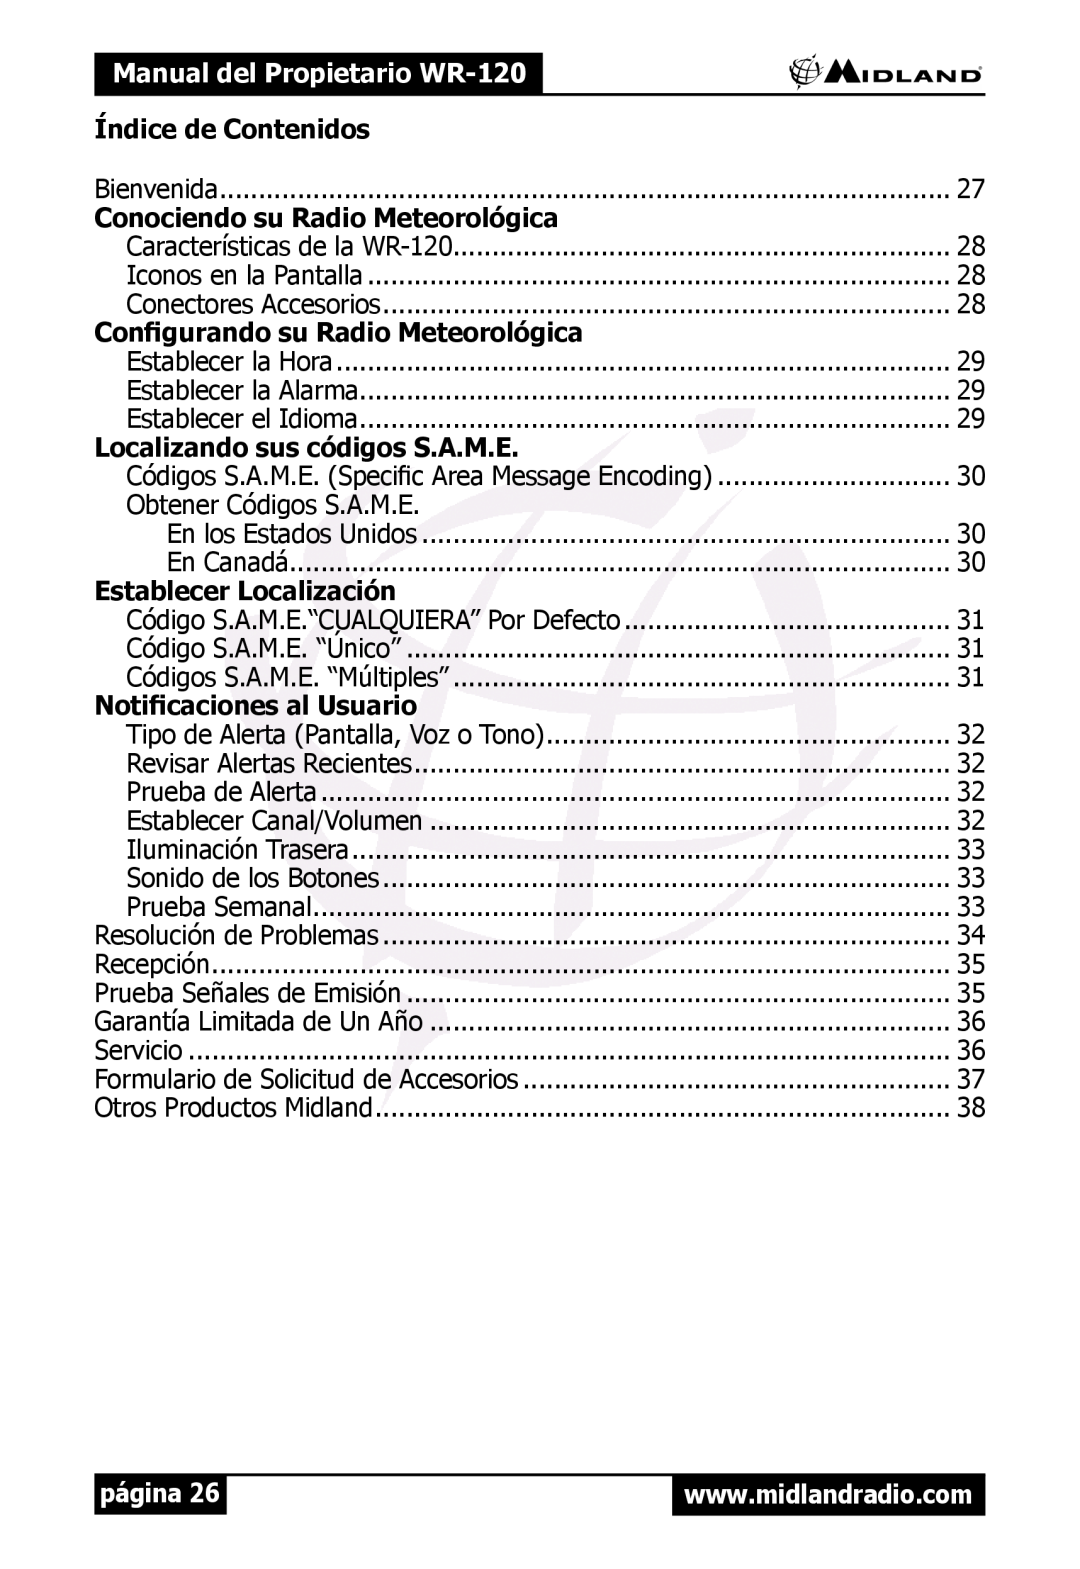 Midland Radio WR120 Manual del Propietario WR-120, Índice de Contenidos, Conociendo su Radio Meteorológica, página 